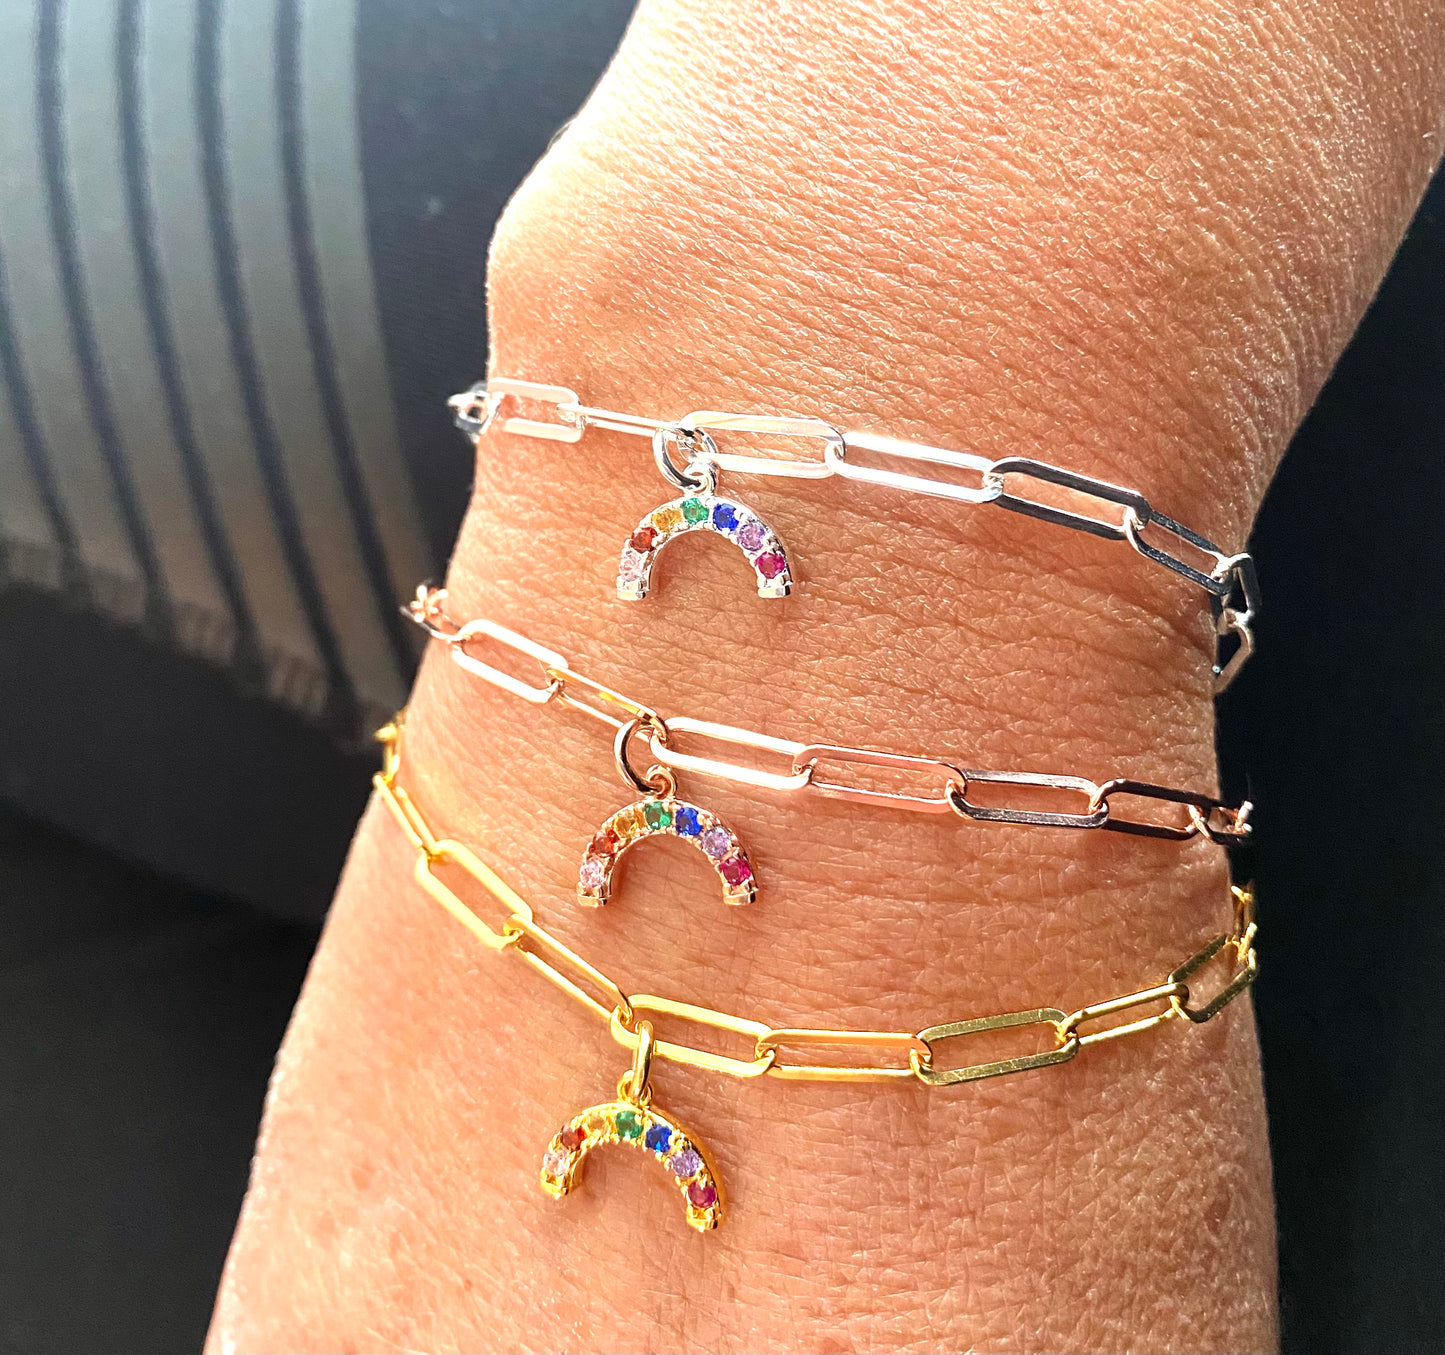 Links bracelet with mini rainbow charm